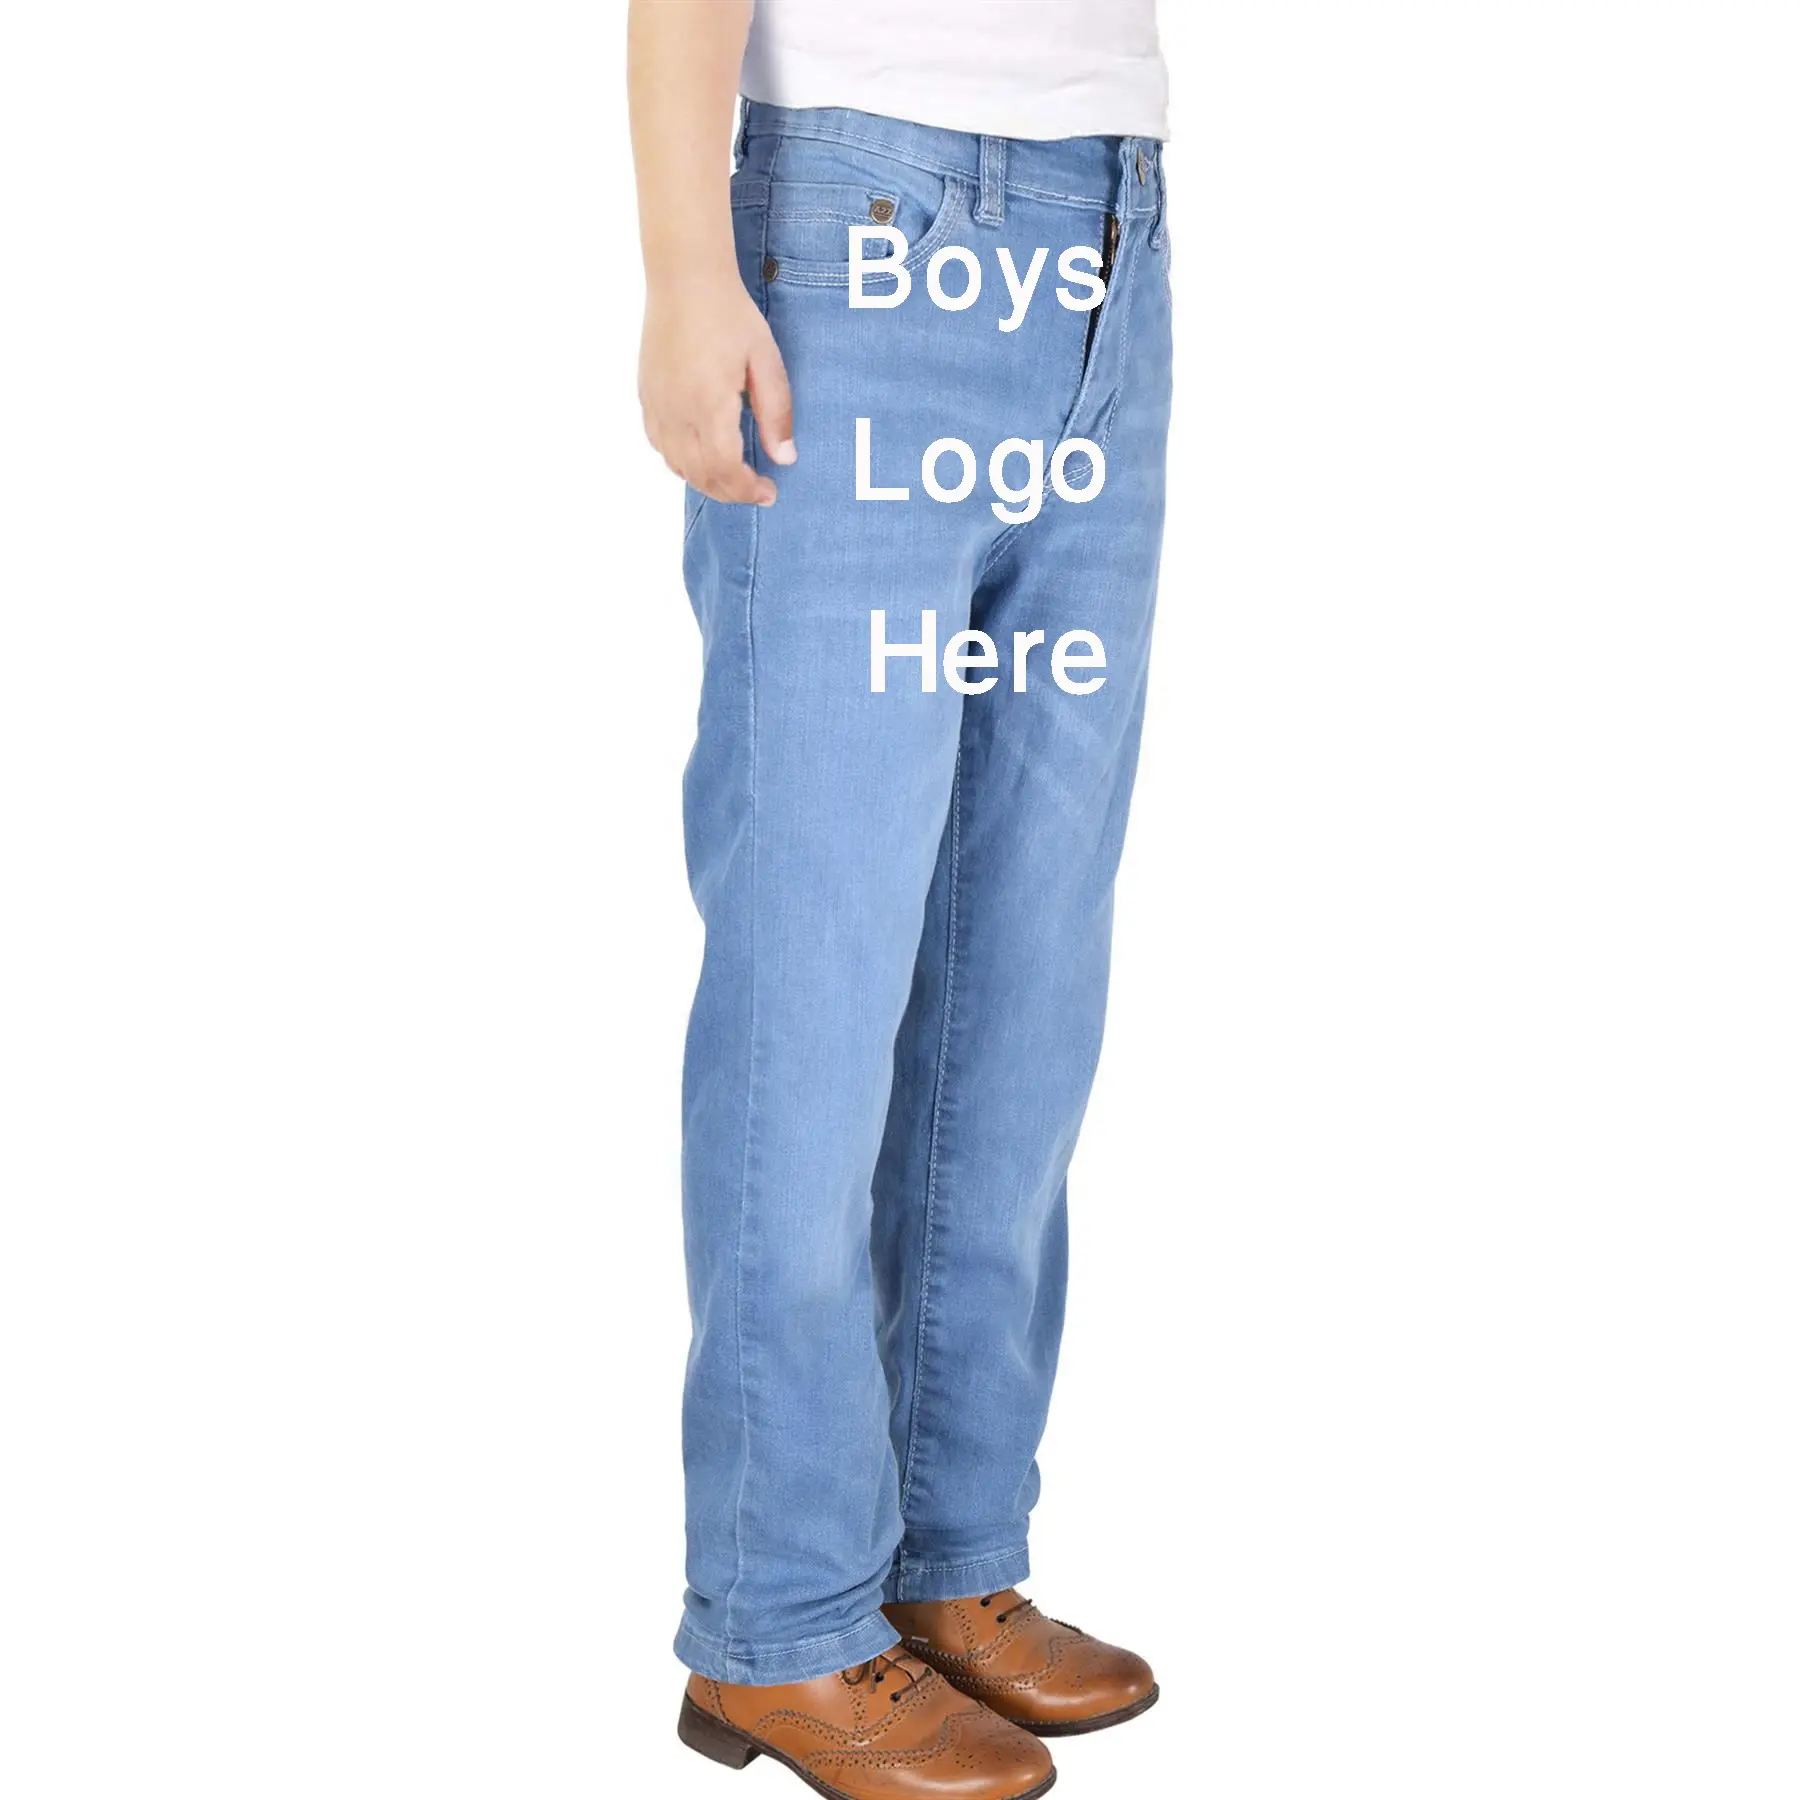 Calça jeans para meninos, calça jeans super overstock com ajuste para meninos, roupa de baixo preço, direto da fábrica de Bangladesh, novidade